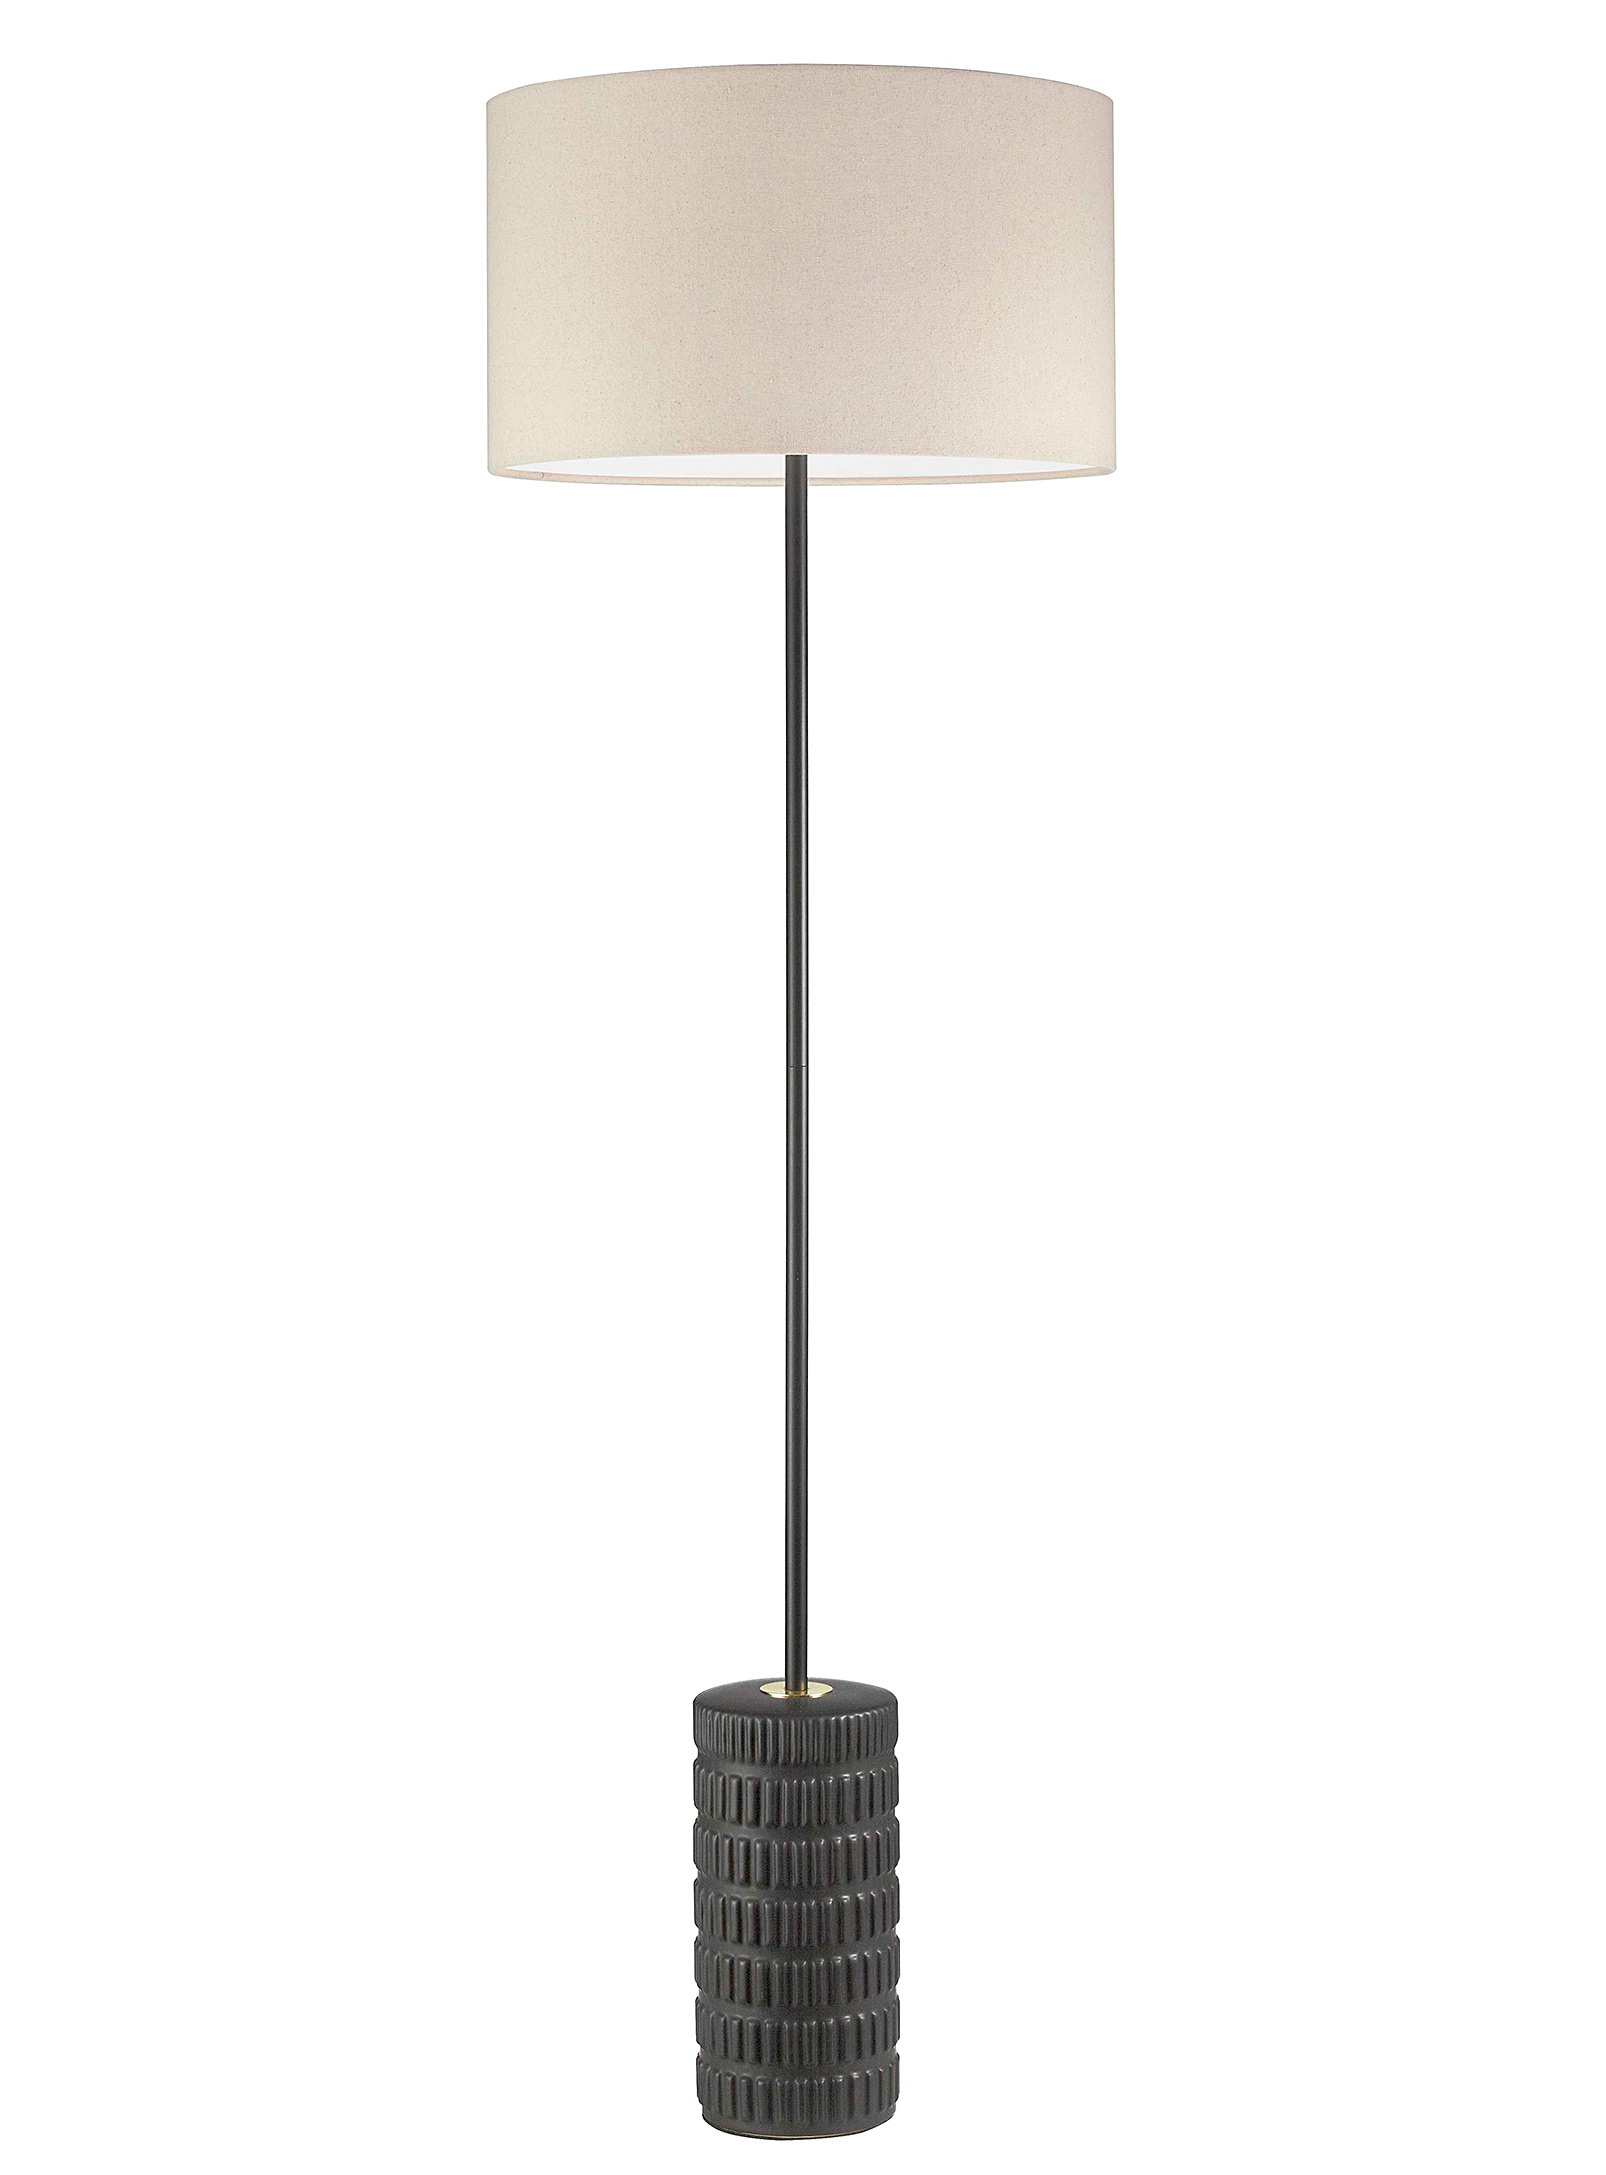 Simons Maison - Ebony ceramic embossed floor lamp